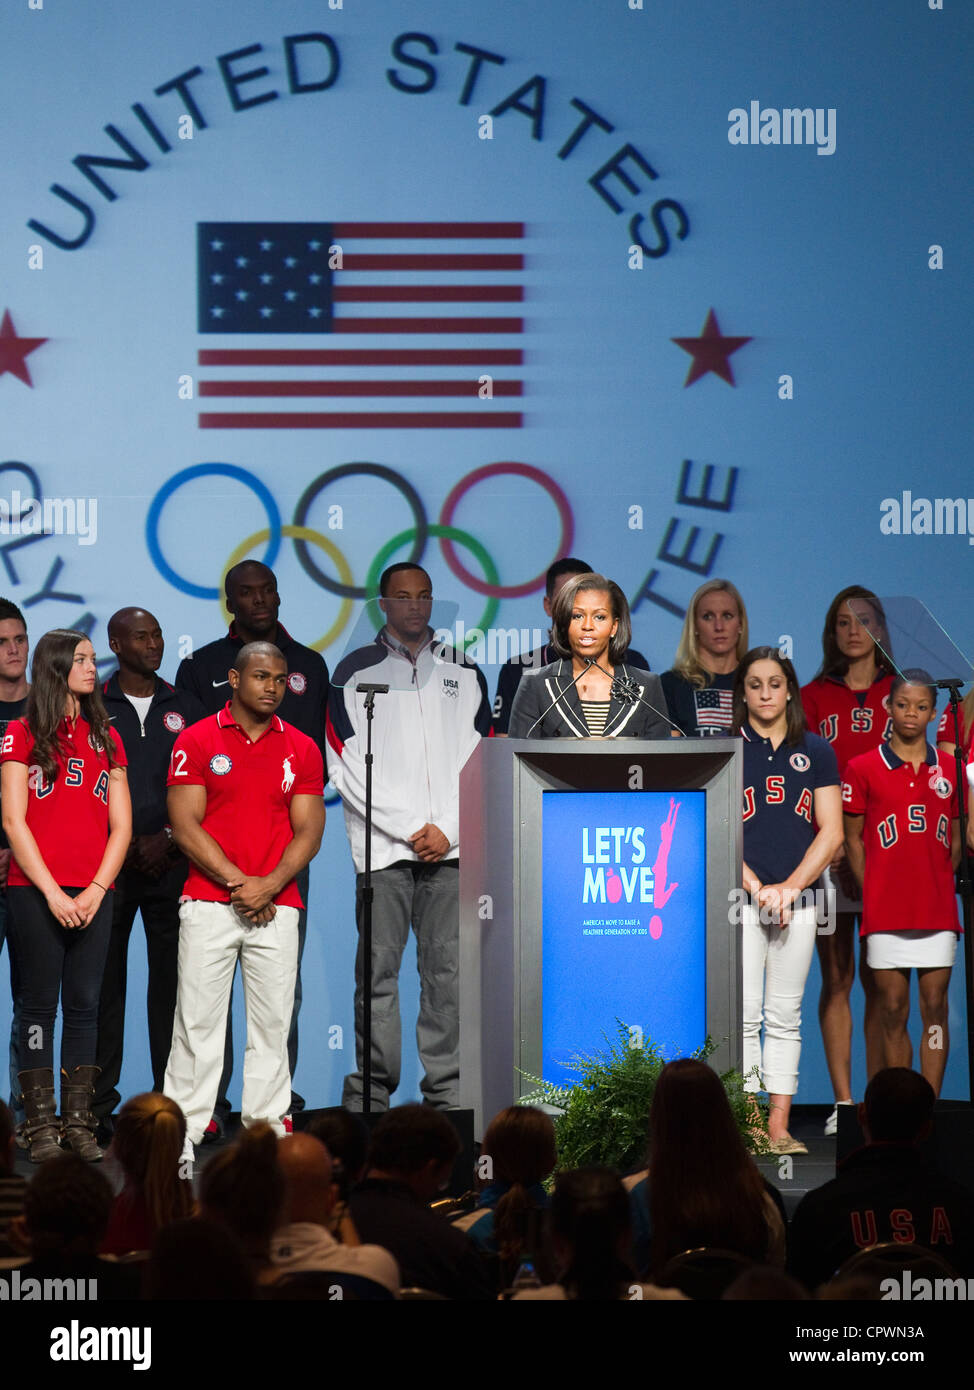 Première Dame des États-Unis d'Amérique Michelle Obama parle aux médias des États-Unis d'athlètes olympiques sur scène Banque D'Images